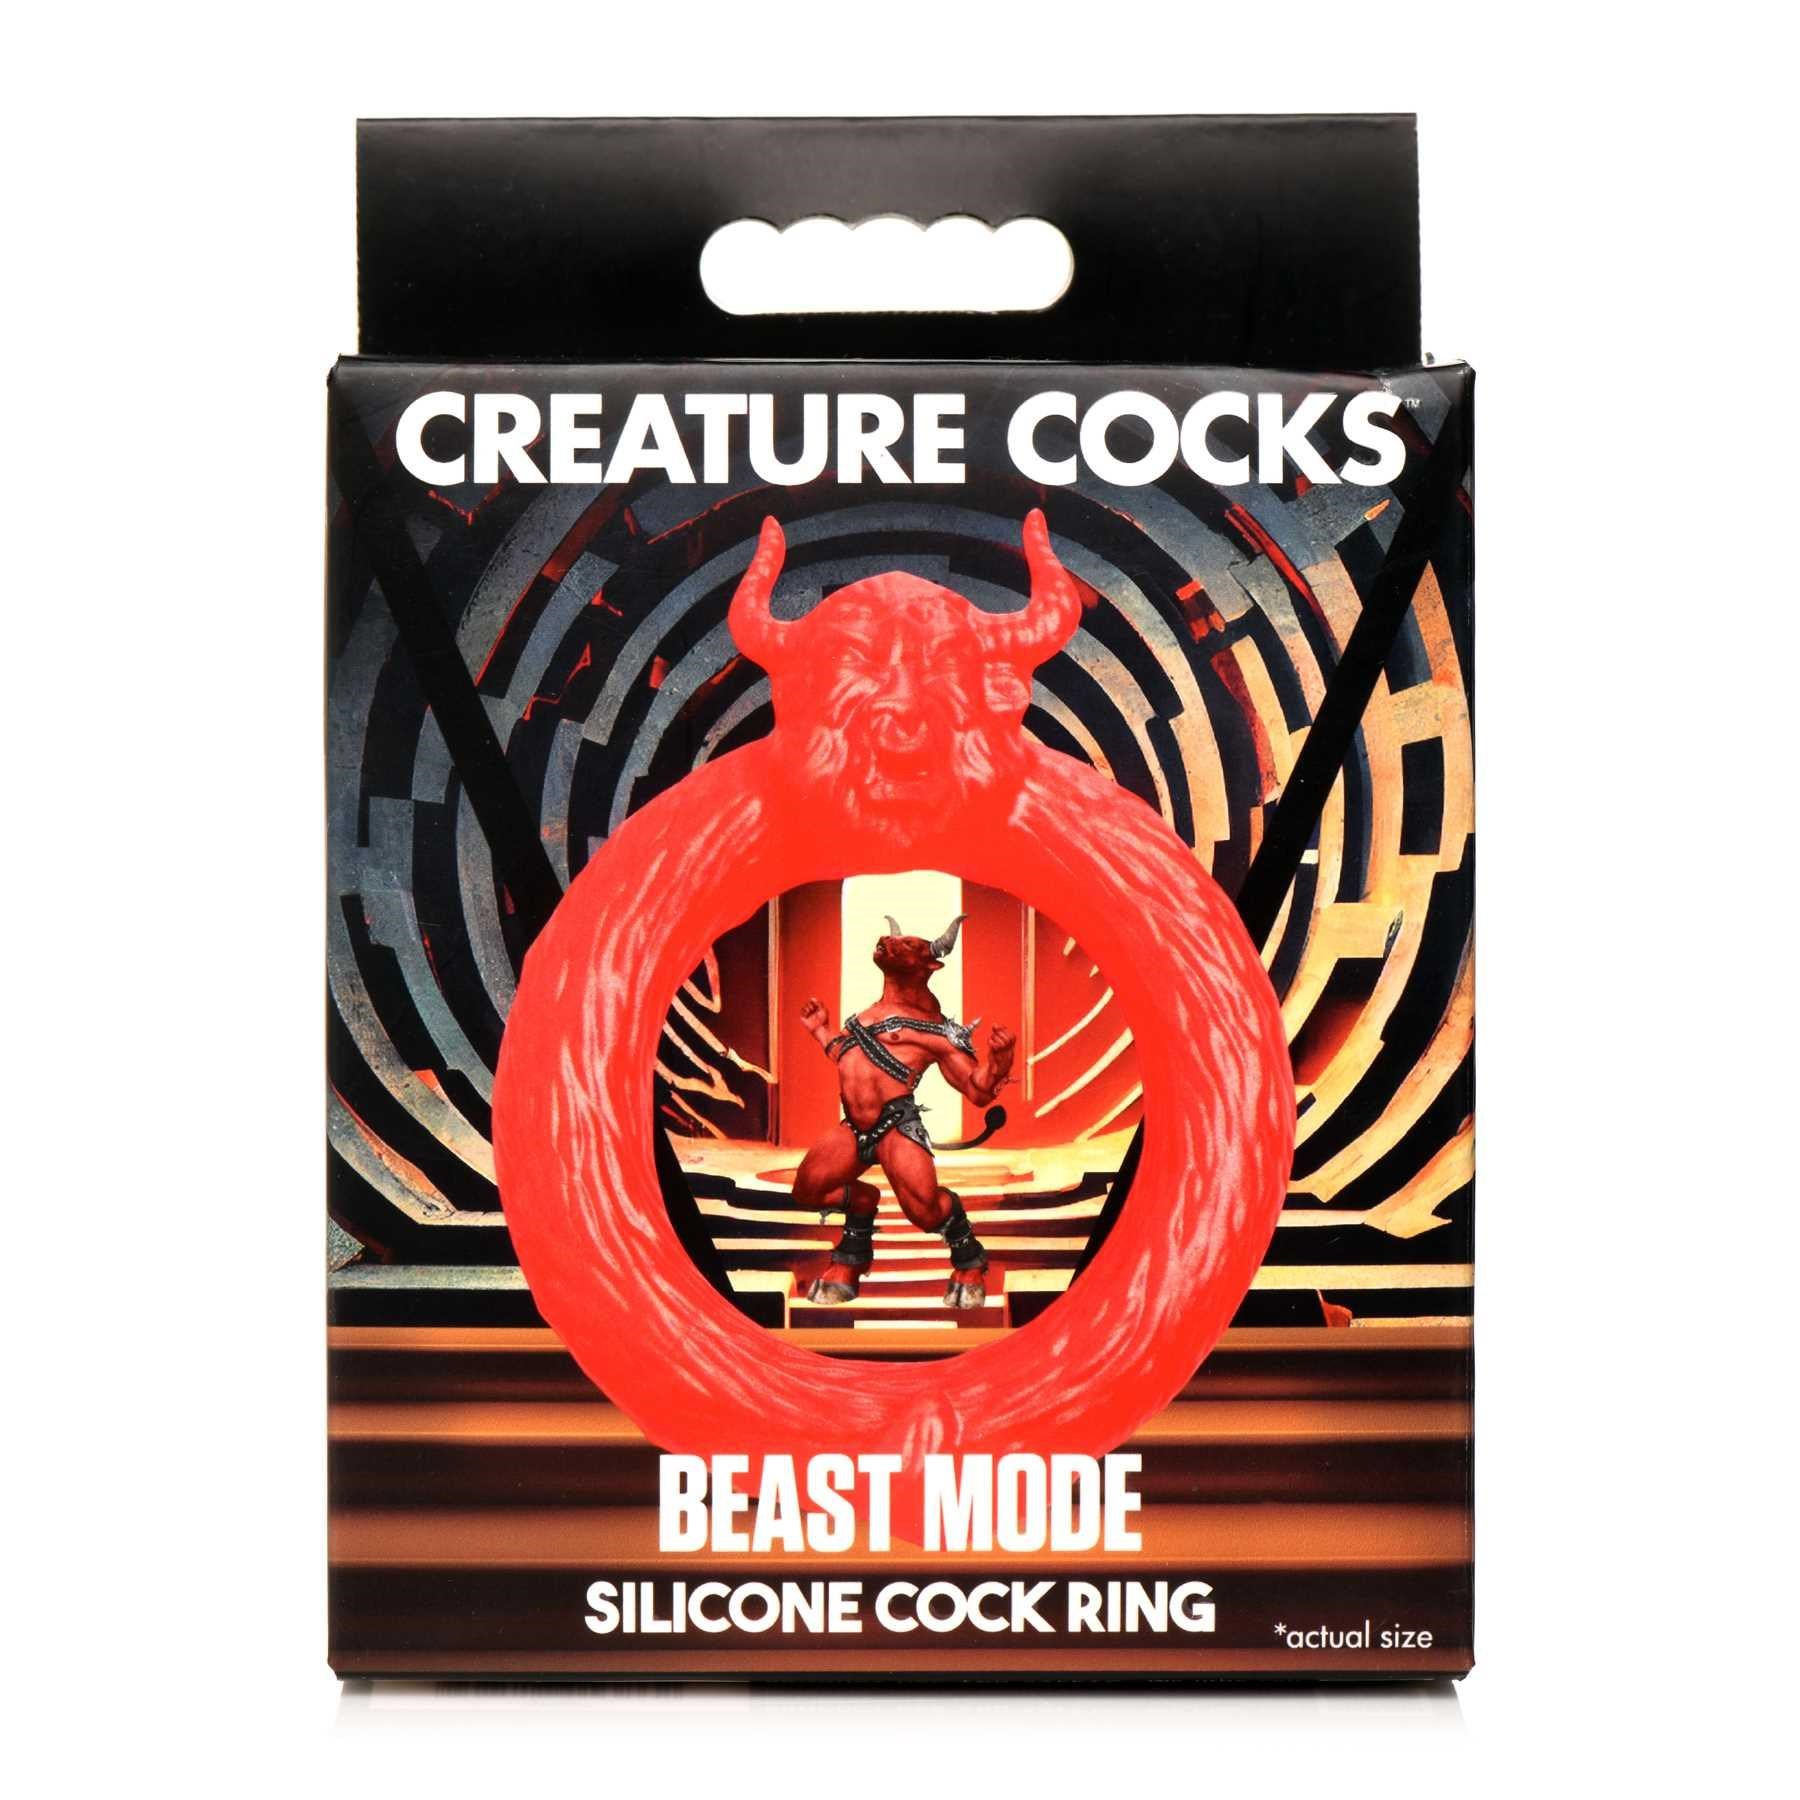 Creature Cocks Minotaur Silicone Cock Ring